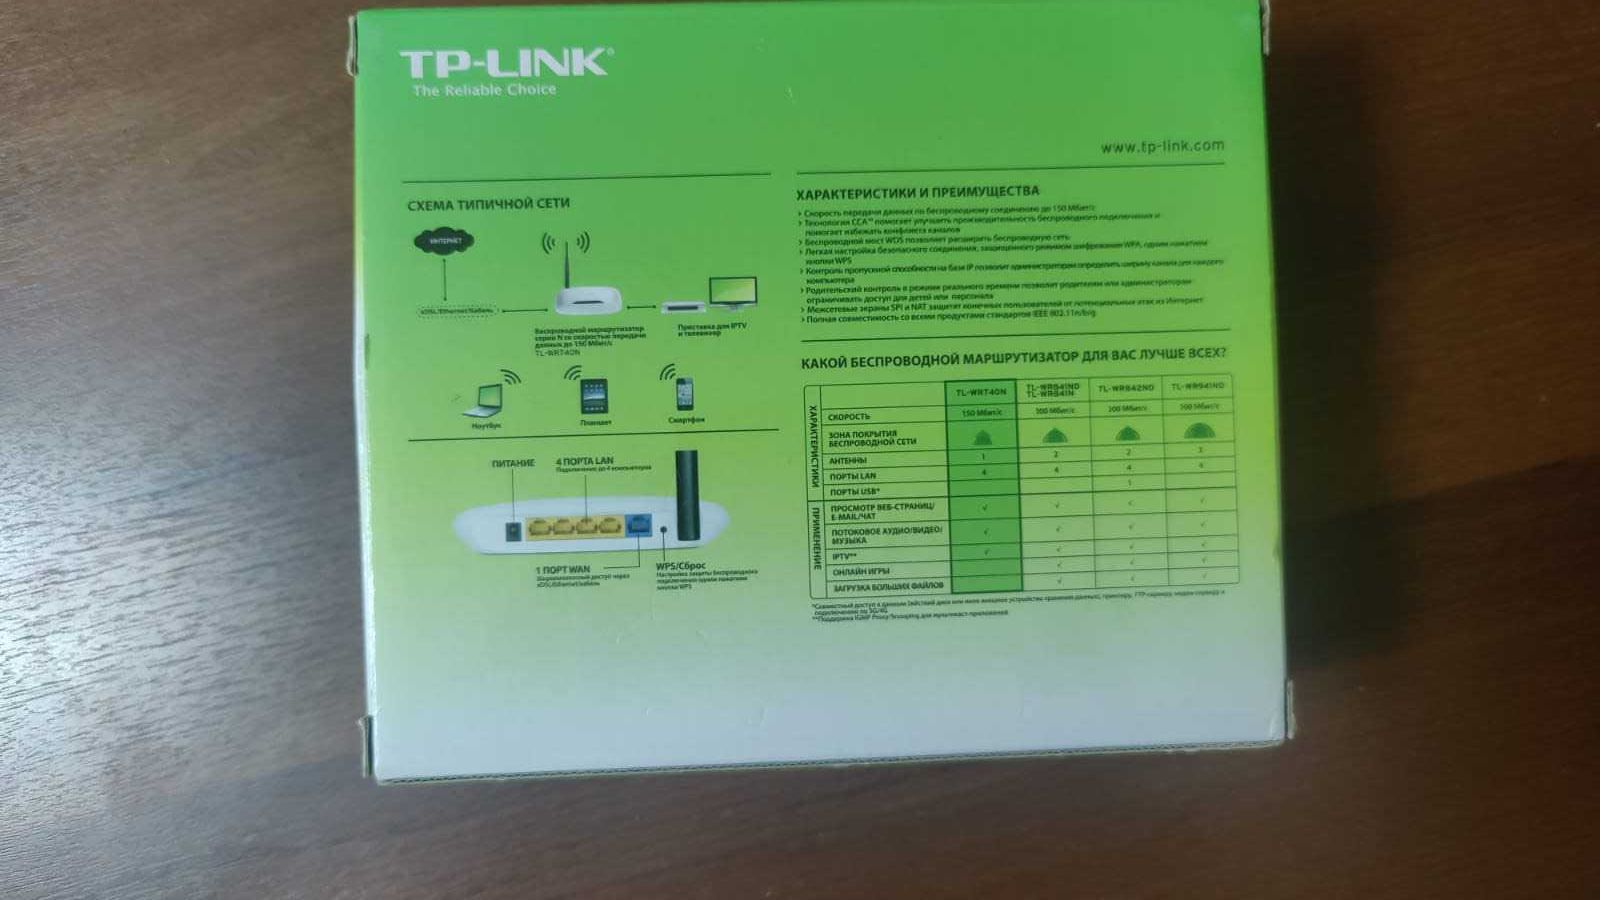 Вайфай роутер TP-Link 150 Mbps